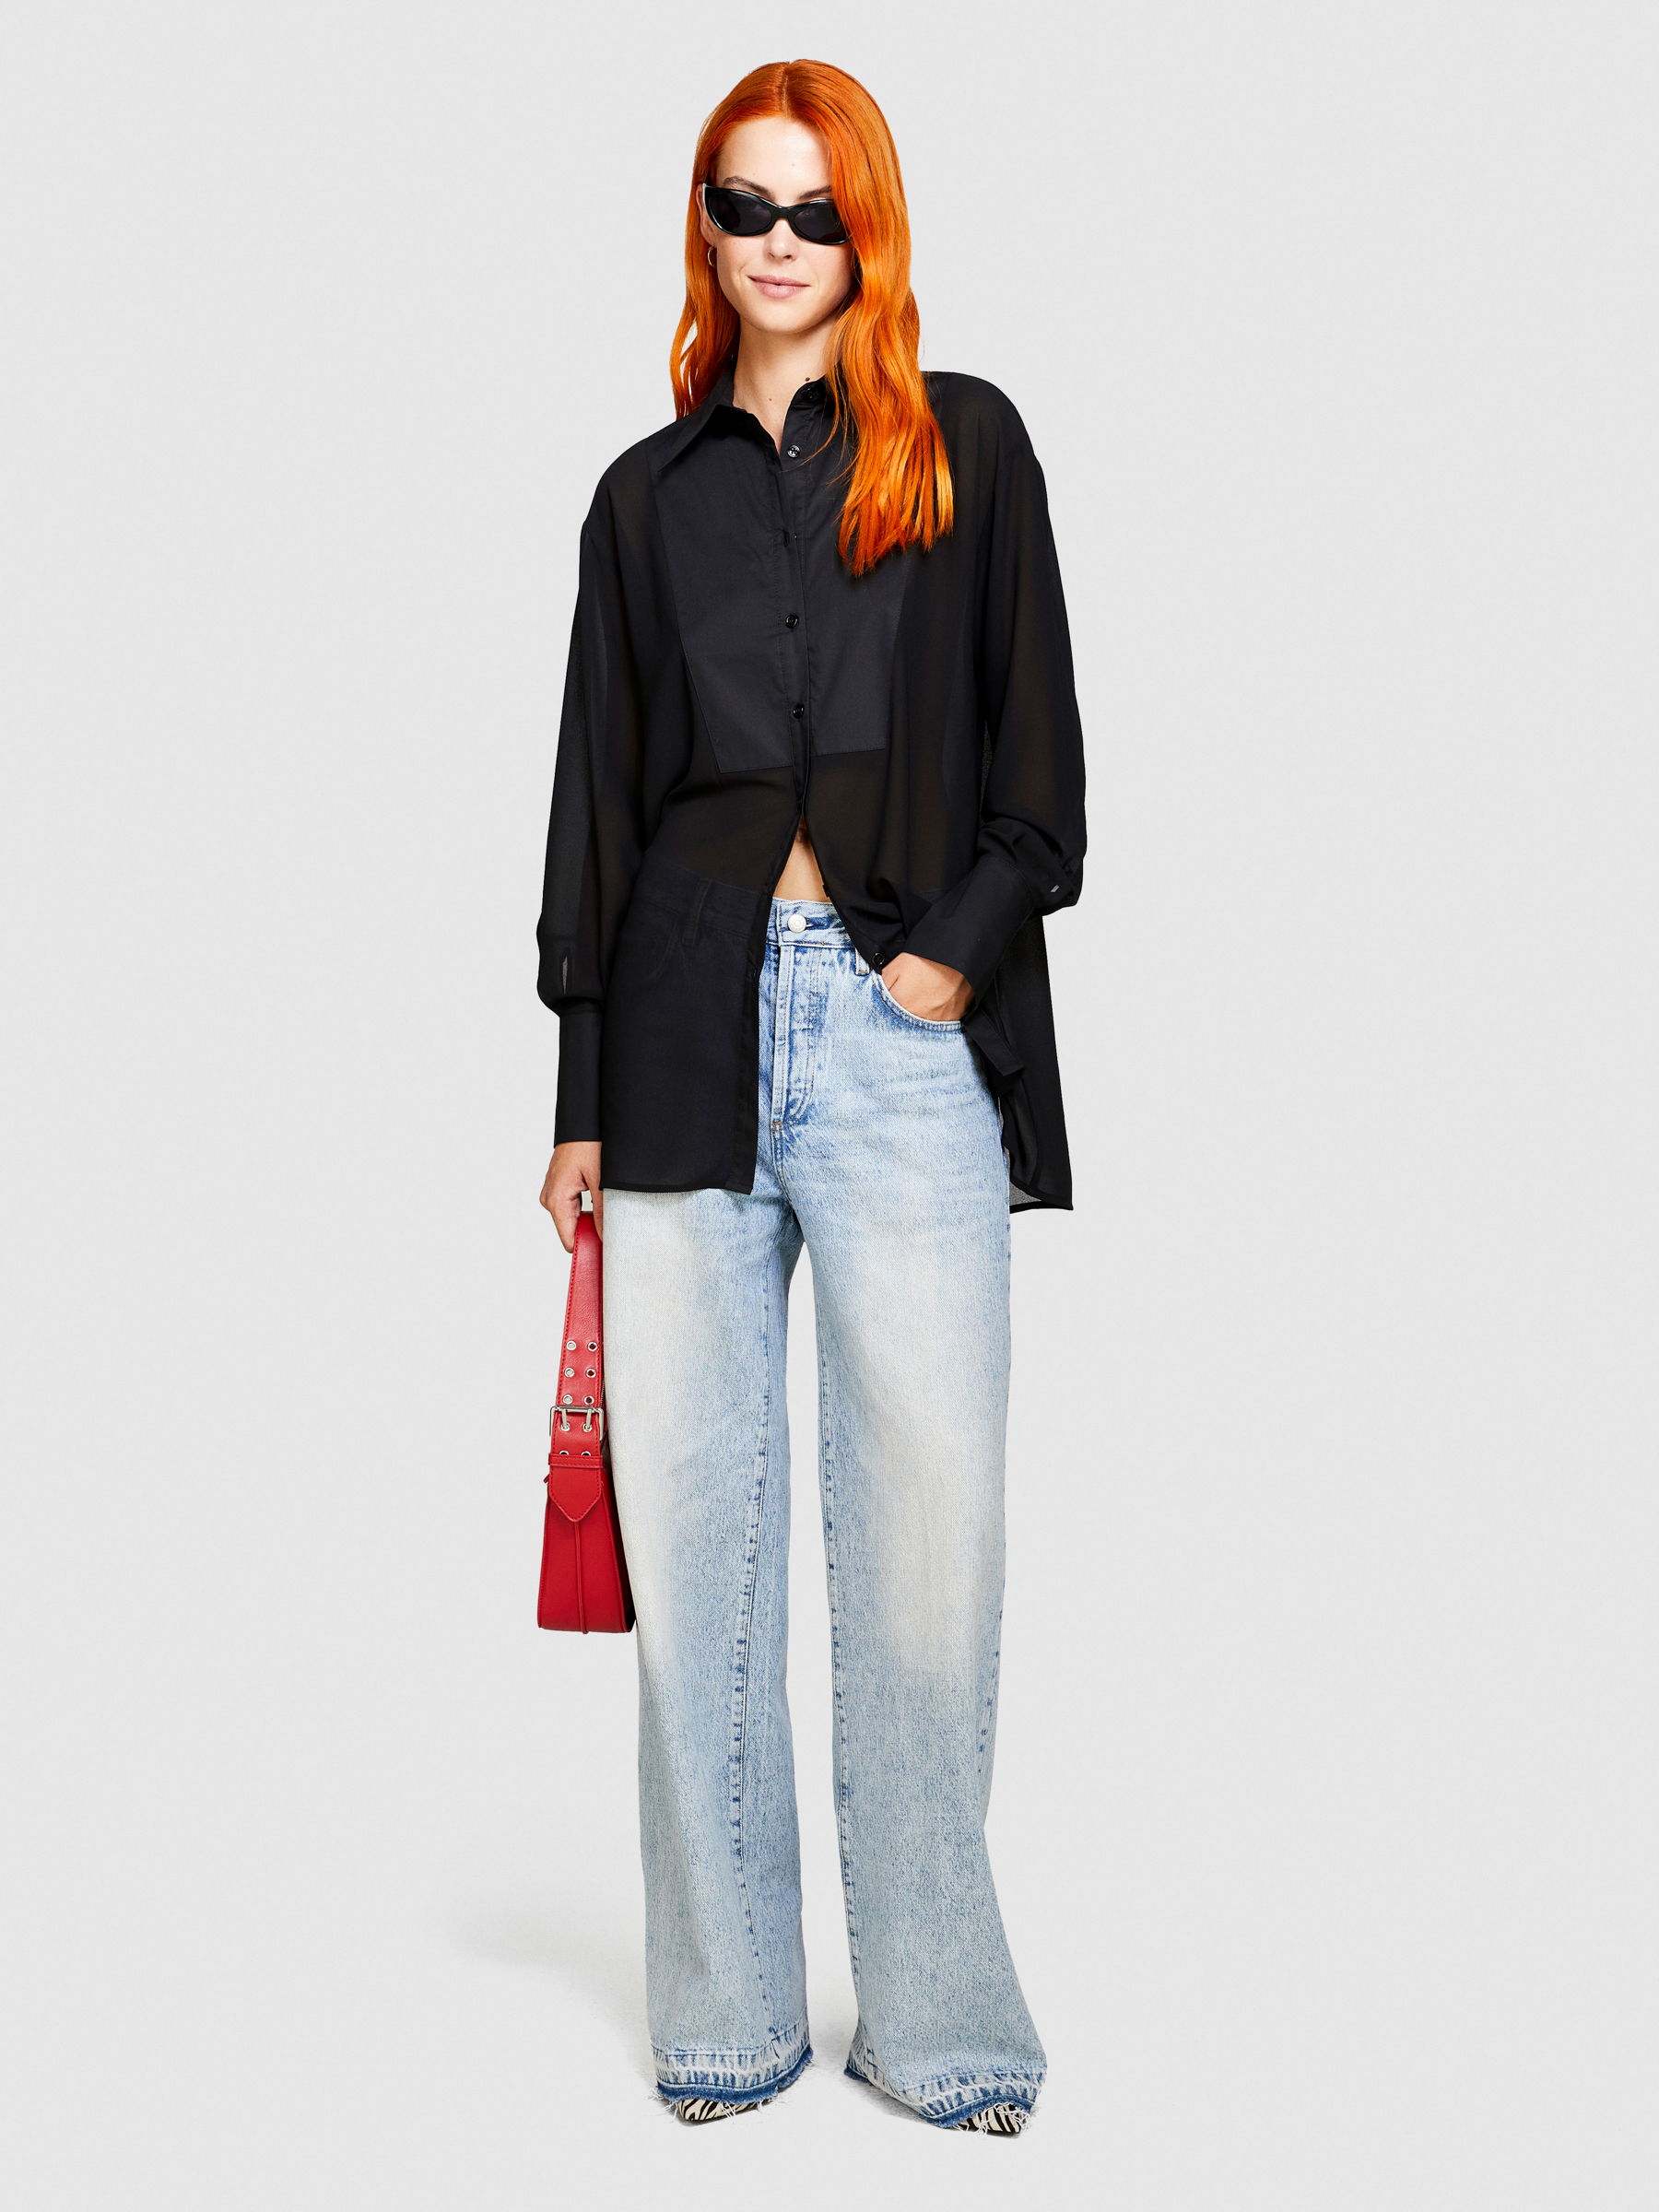 Sisley - Long Chiffon Shirt, Woman, Black, Size: L